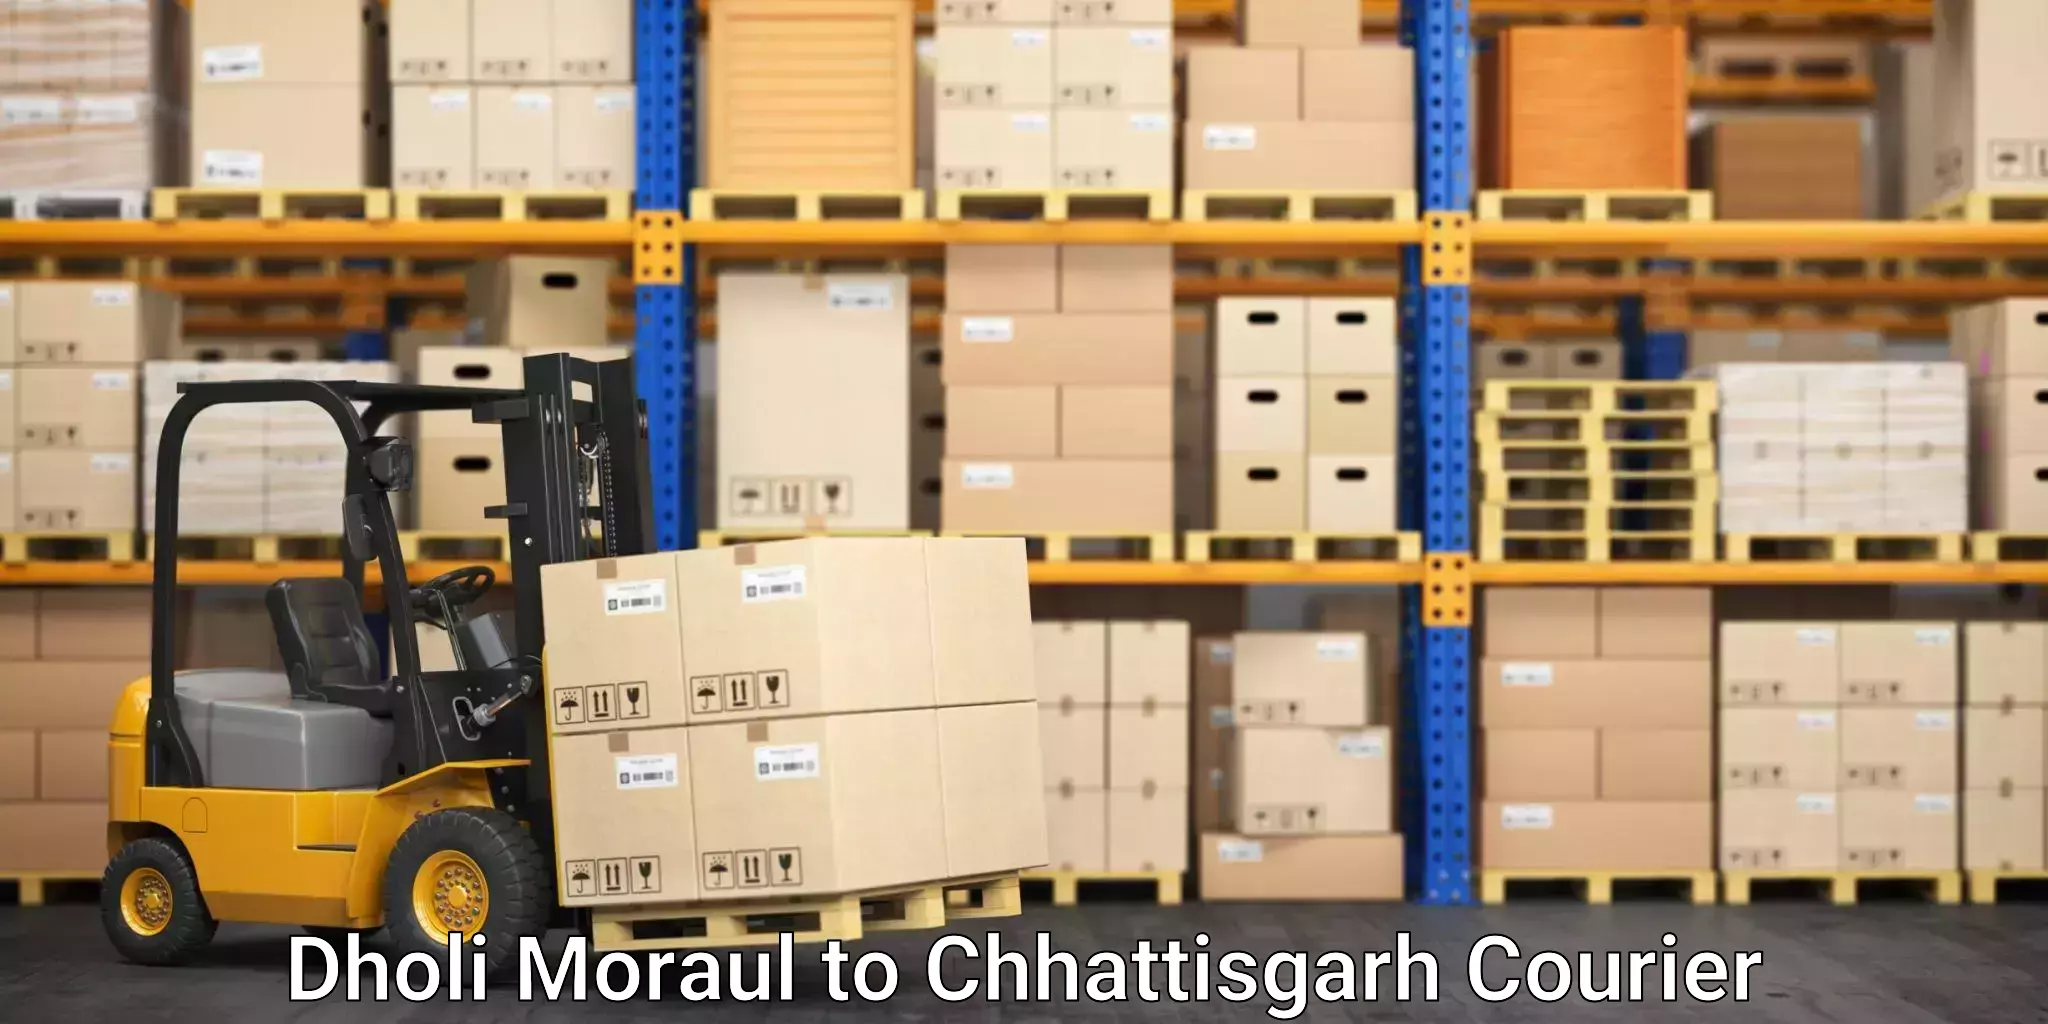 Reliable relocation services Dholi Moraul to Chhattisgarh